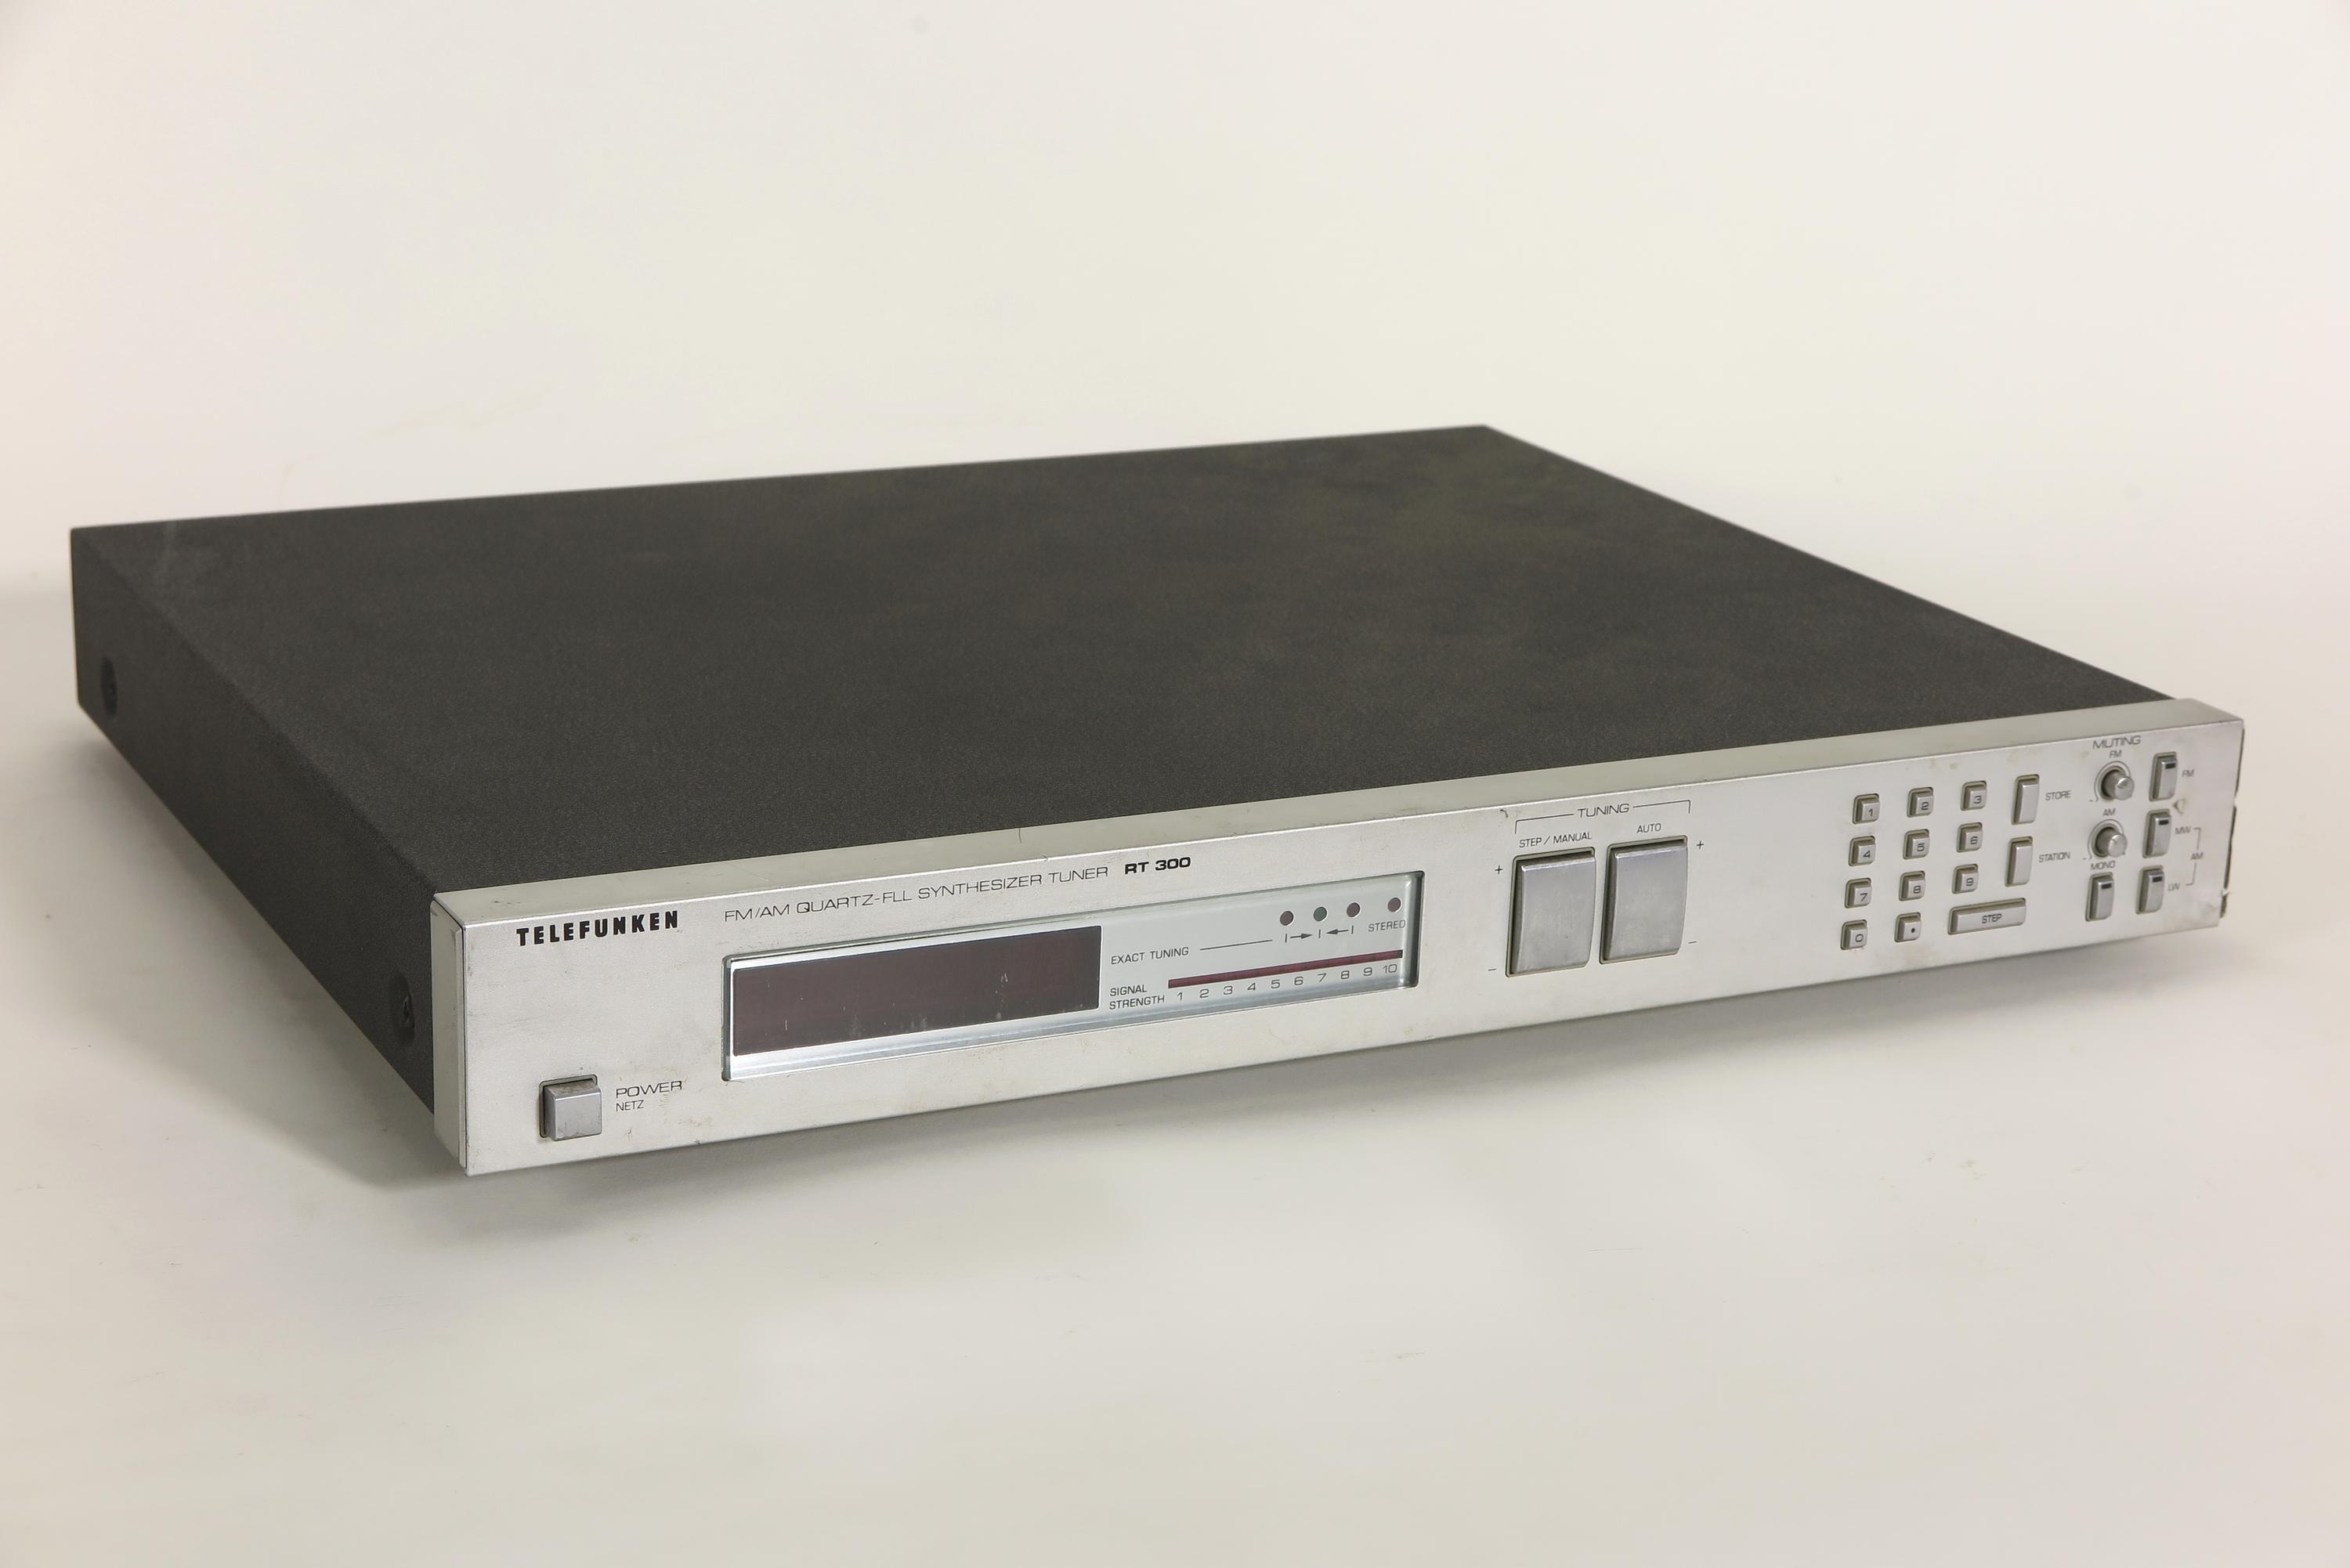 Zubehör zu Kompaktanlage Telefunken 300 (4 Komponenten), Radio-Tuner RT 300 (FM/AM Quartz-FLL-Synthesizer Tuner) (Deutsches Technikmuseum CC BY)